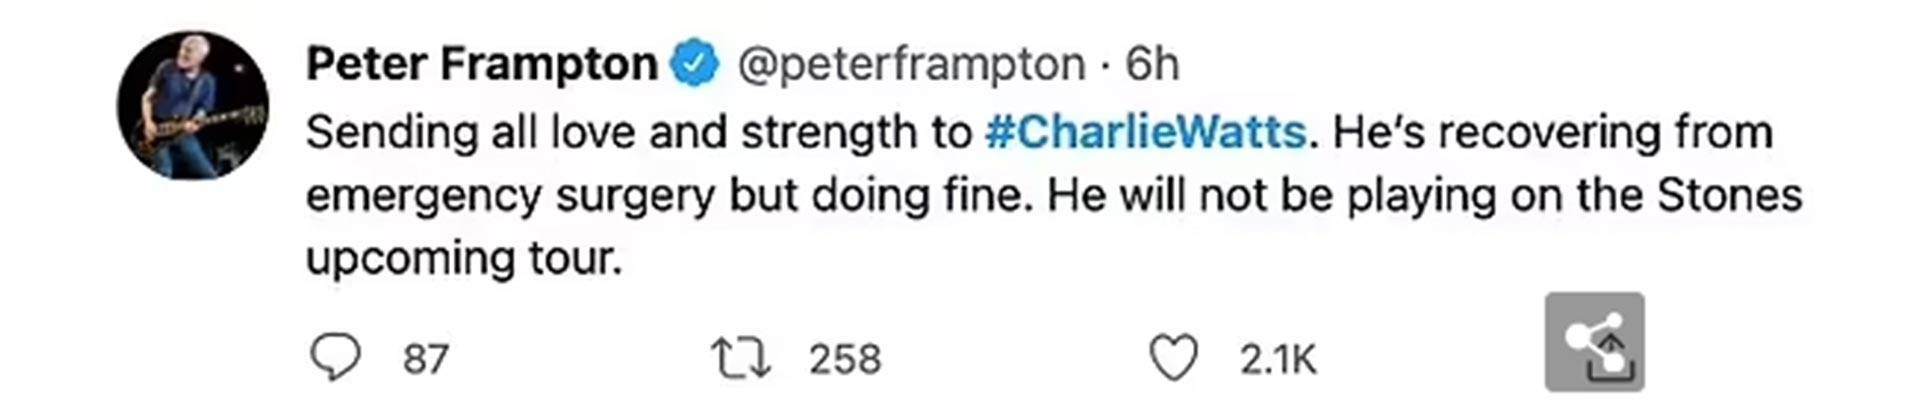 El twitt de Peter Frampton